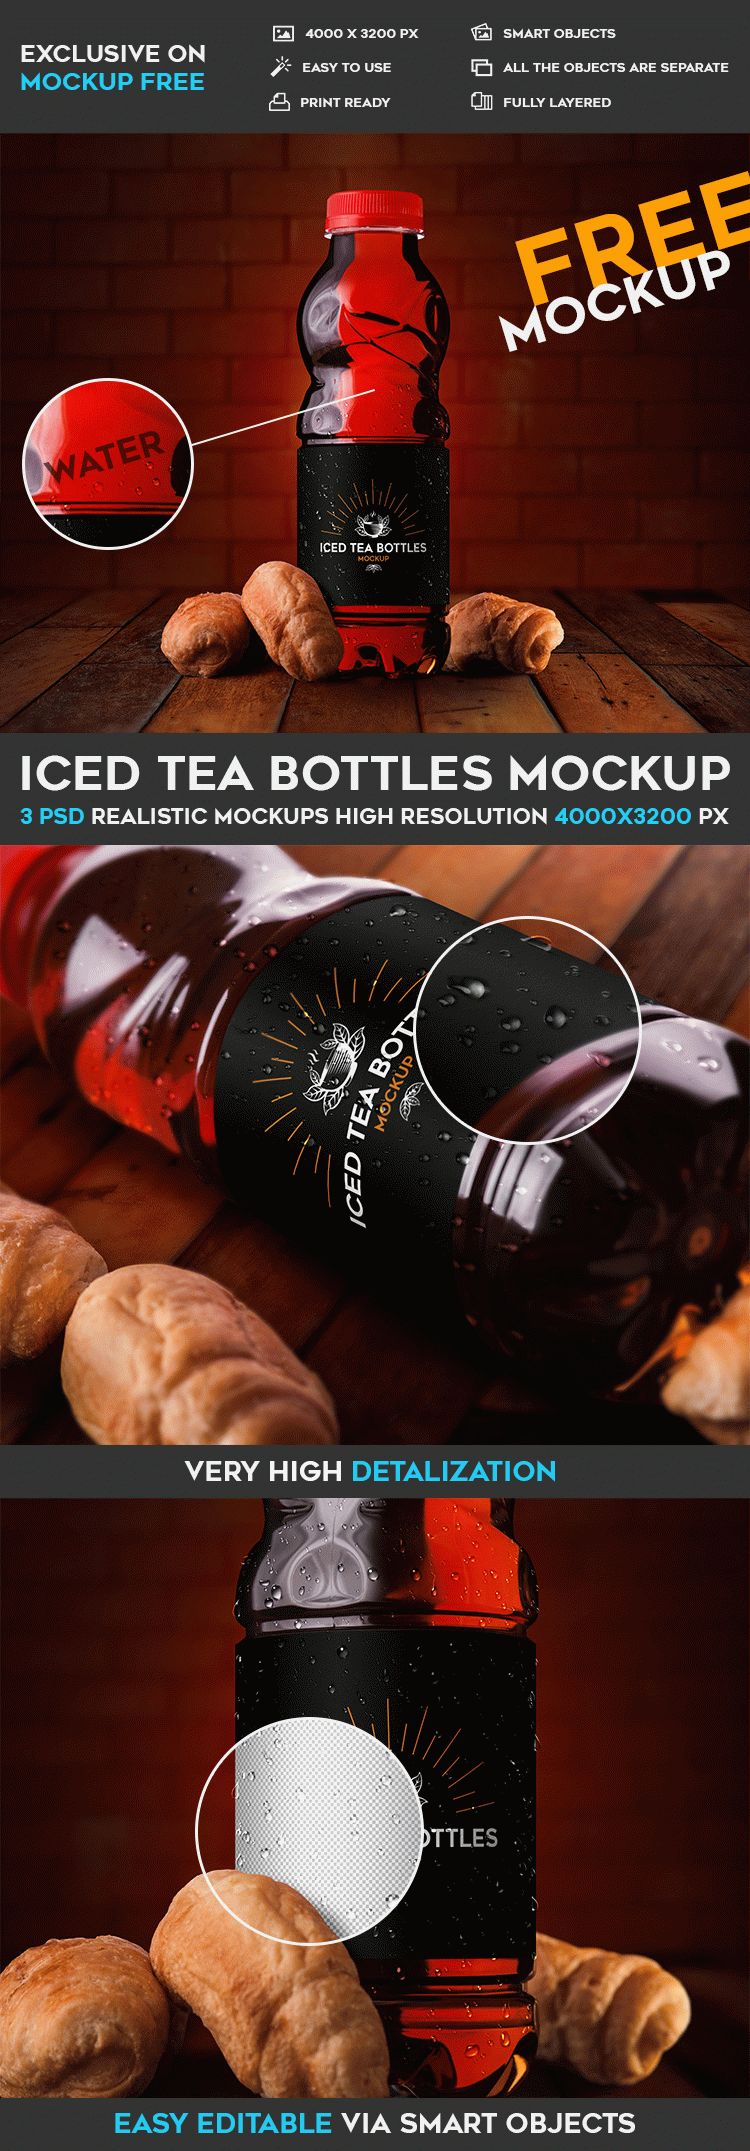 Iced Tea Bottles - Free PSD Mockup | Download